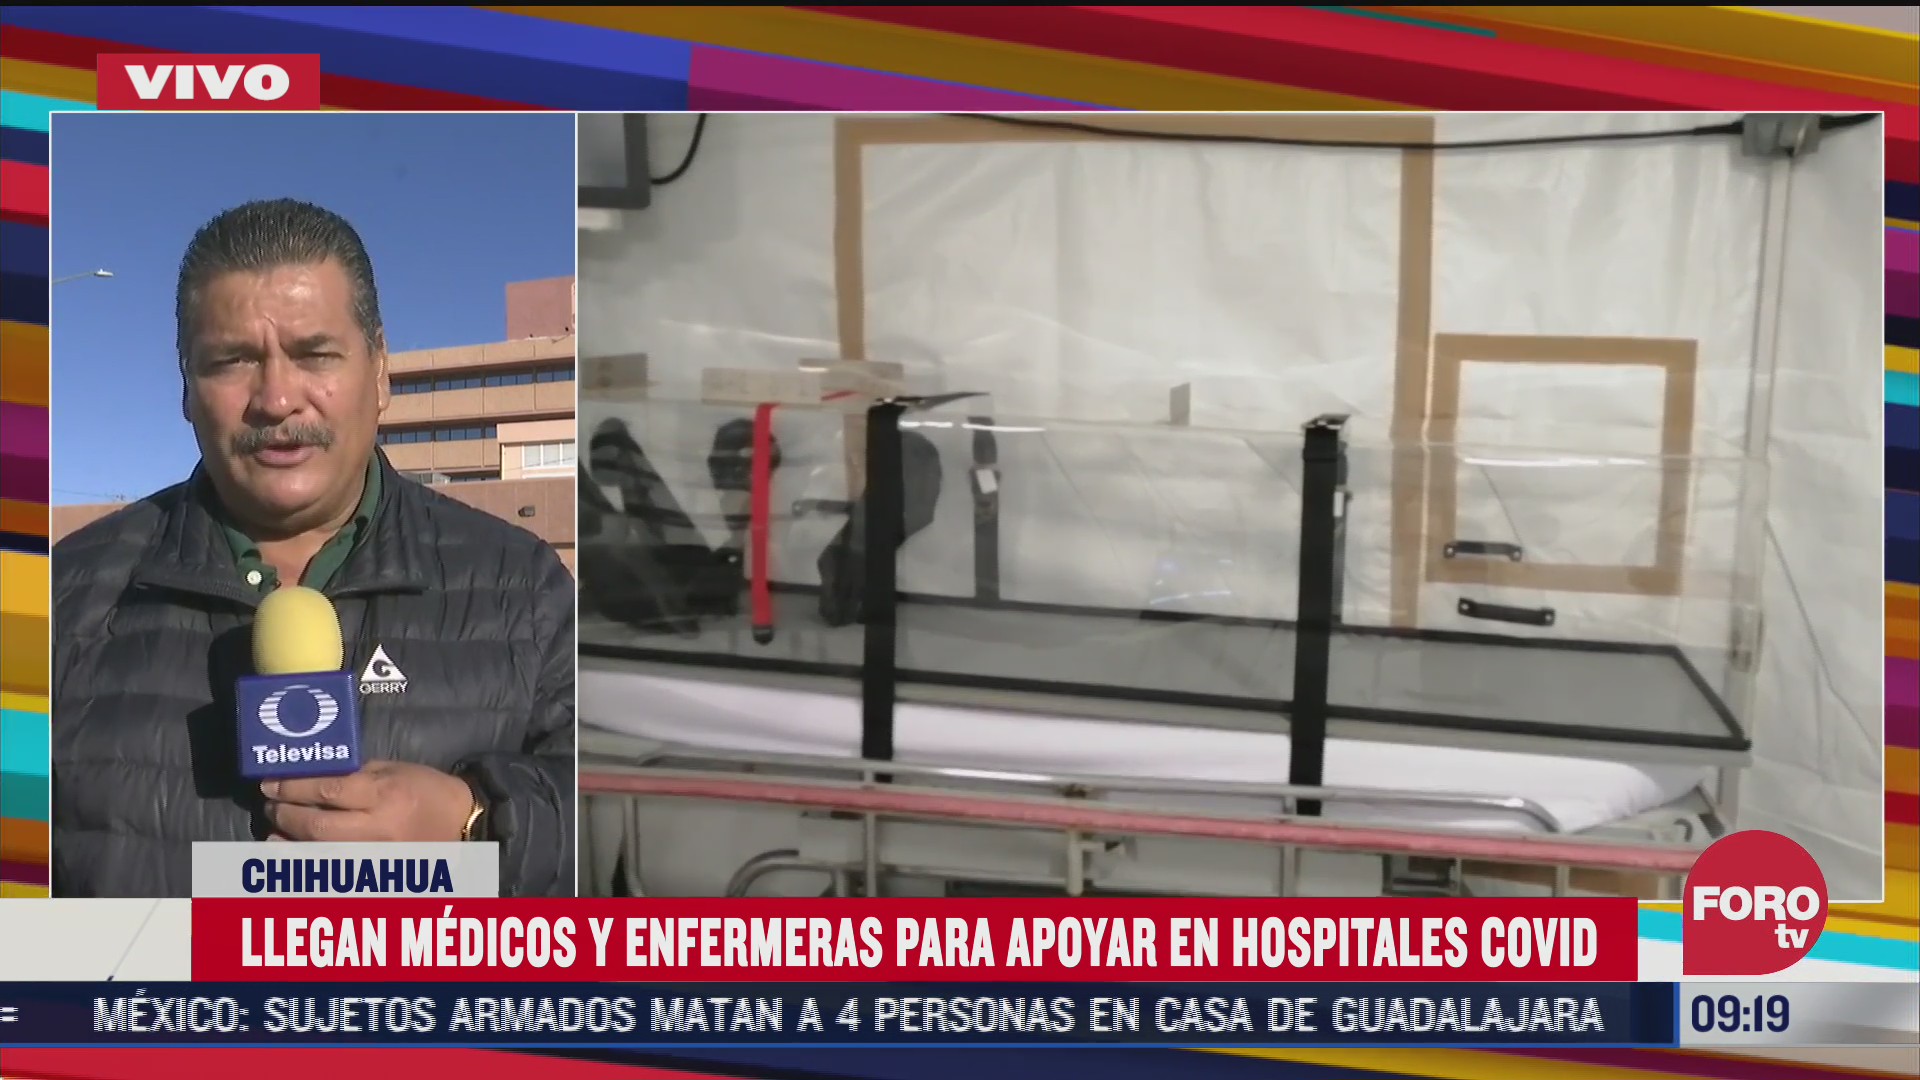 medicos y enfermeras del imss llegan a chihuahua para reforzar hospitales covid